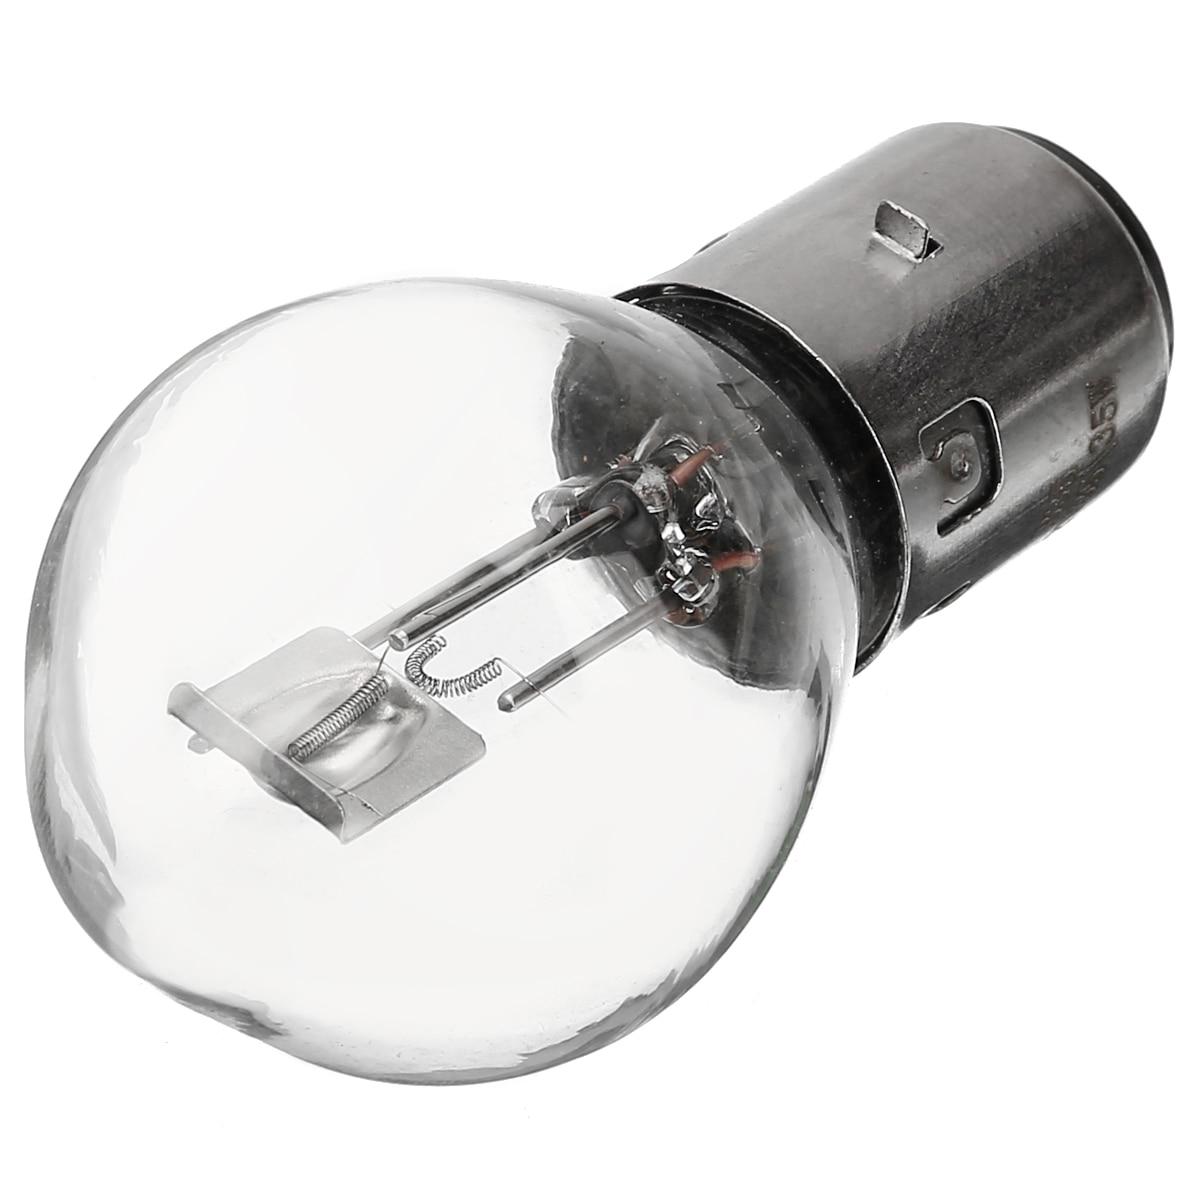 Какая мощная лампа для гель-лака? какая мощность лампы для гель-лака нужна? стоит дли покупать лампу для гель-лака на 72, 96 вт?